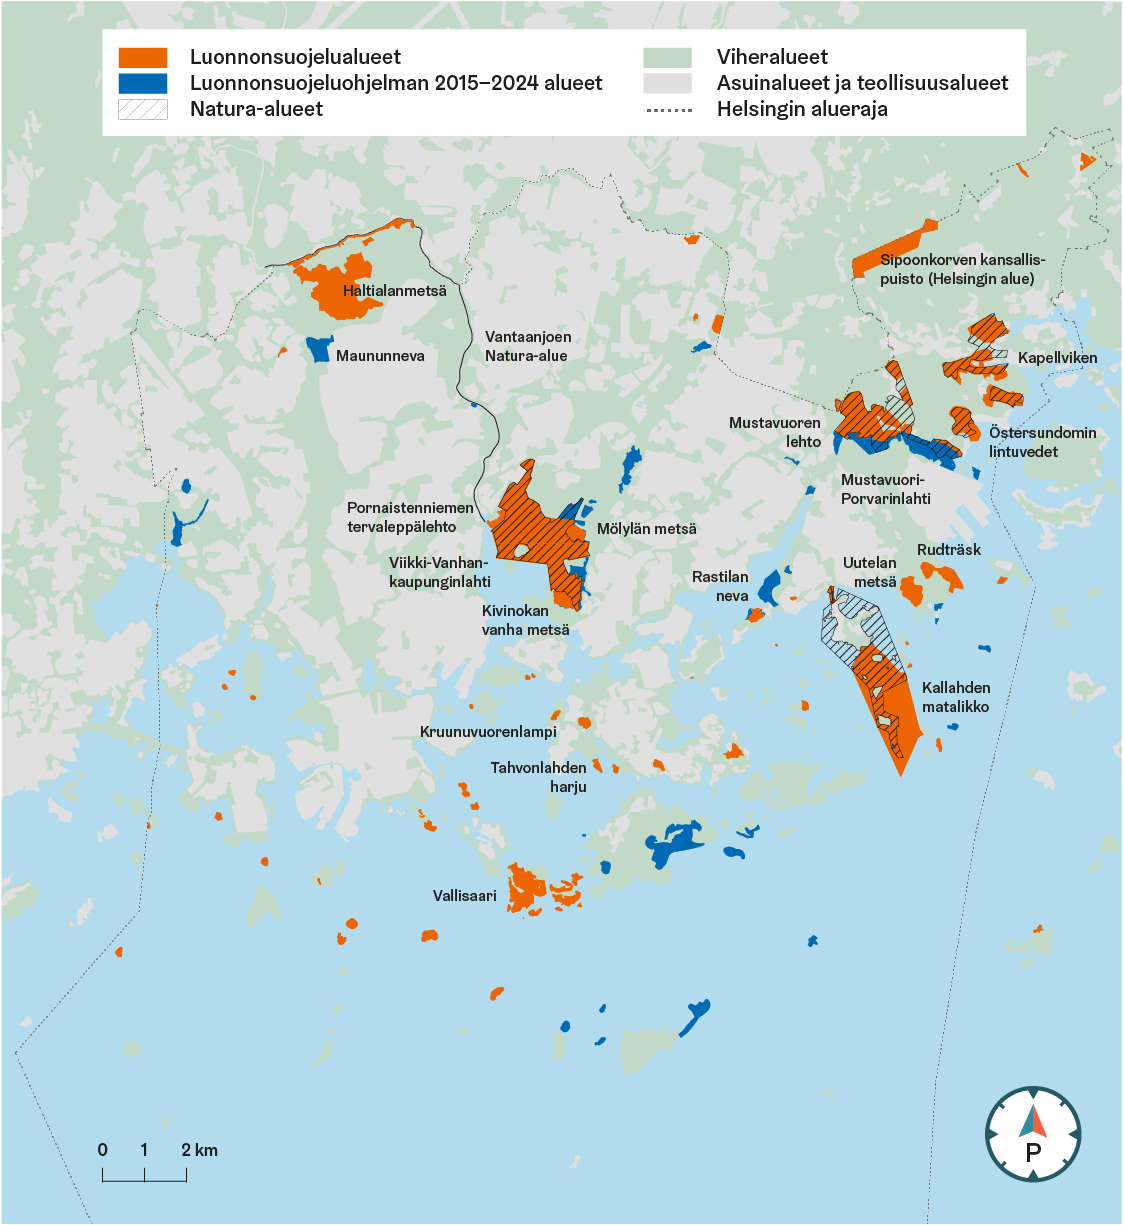 Kartassa esitetään Helsingin luonnonsuojelualueet, luonnonsuojeluohjelman 2015–2024 alueet, Natura-alueet, viheralueet sekä asuinalueet ja teollisuusalueet.